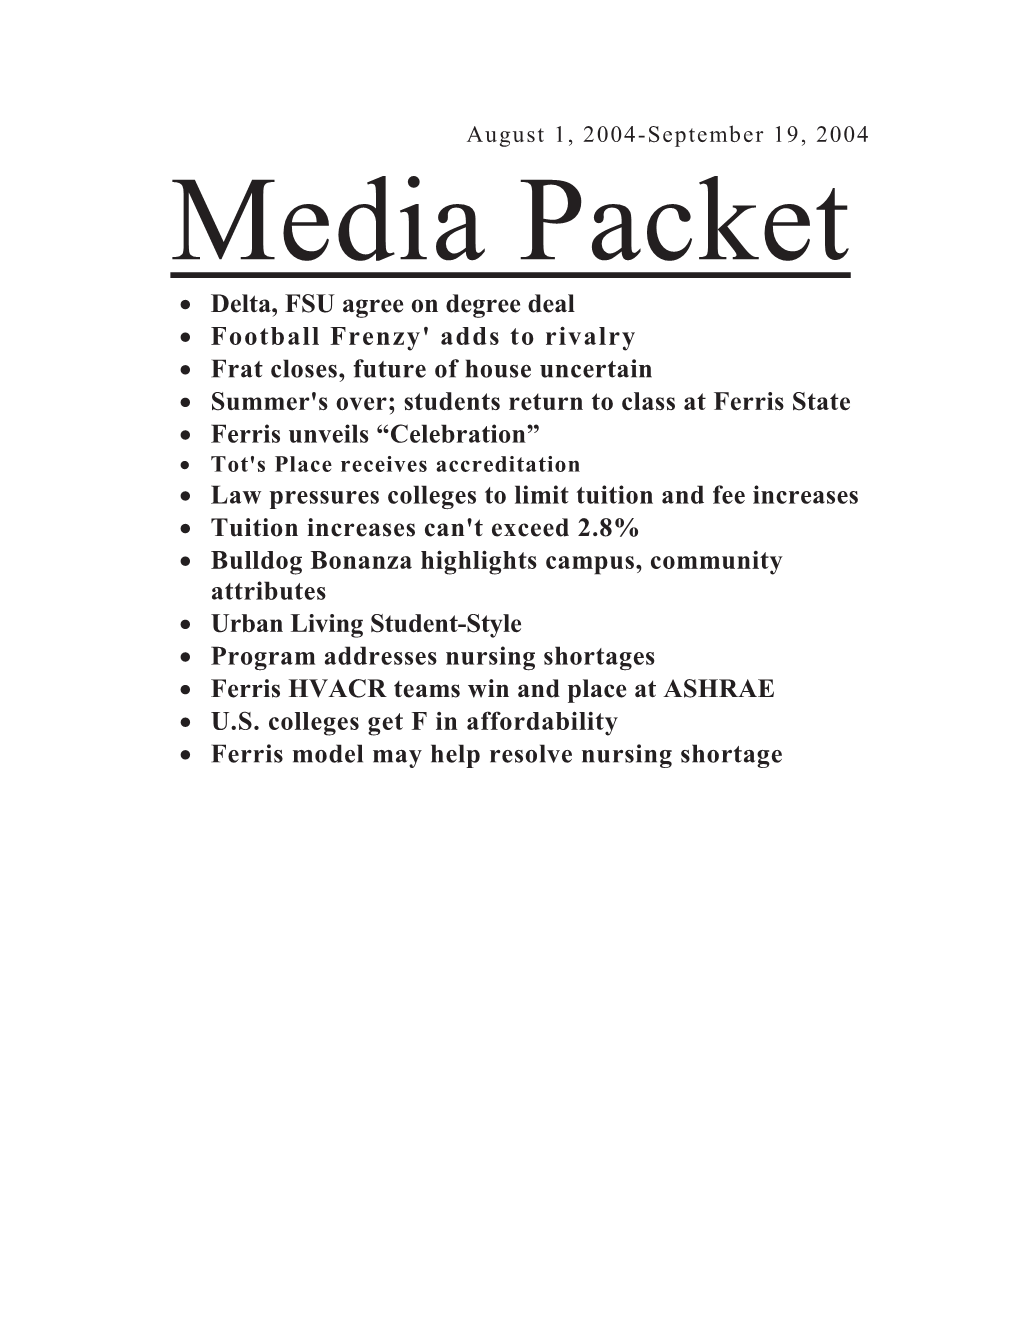 Media Packet